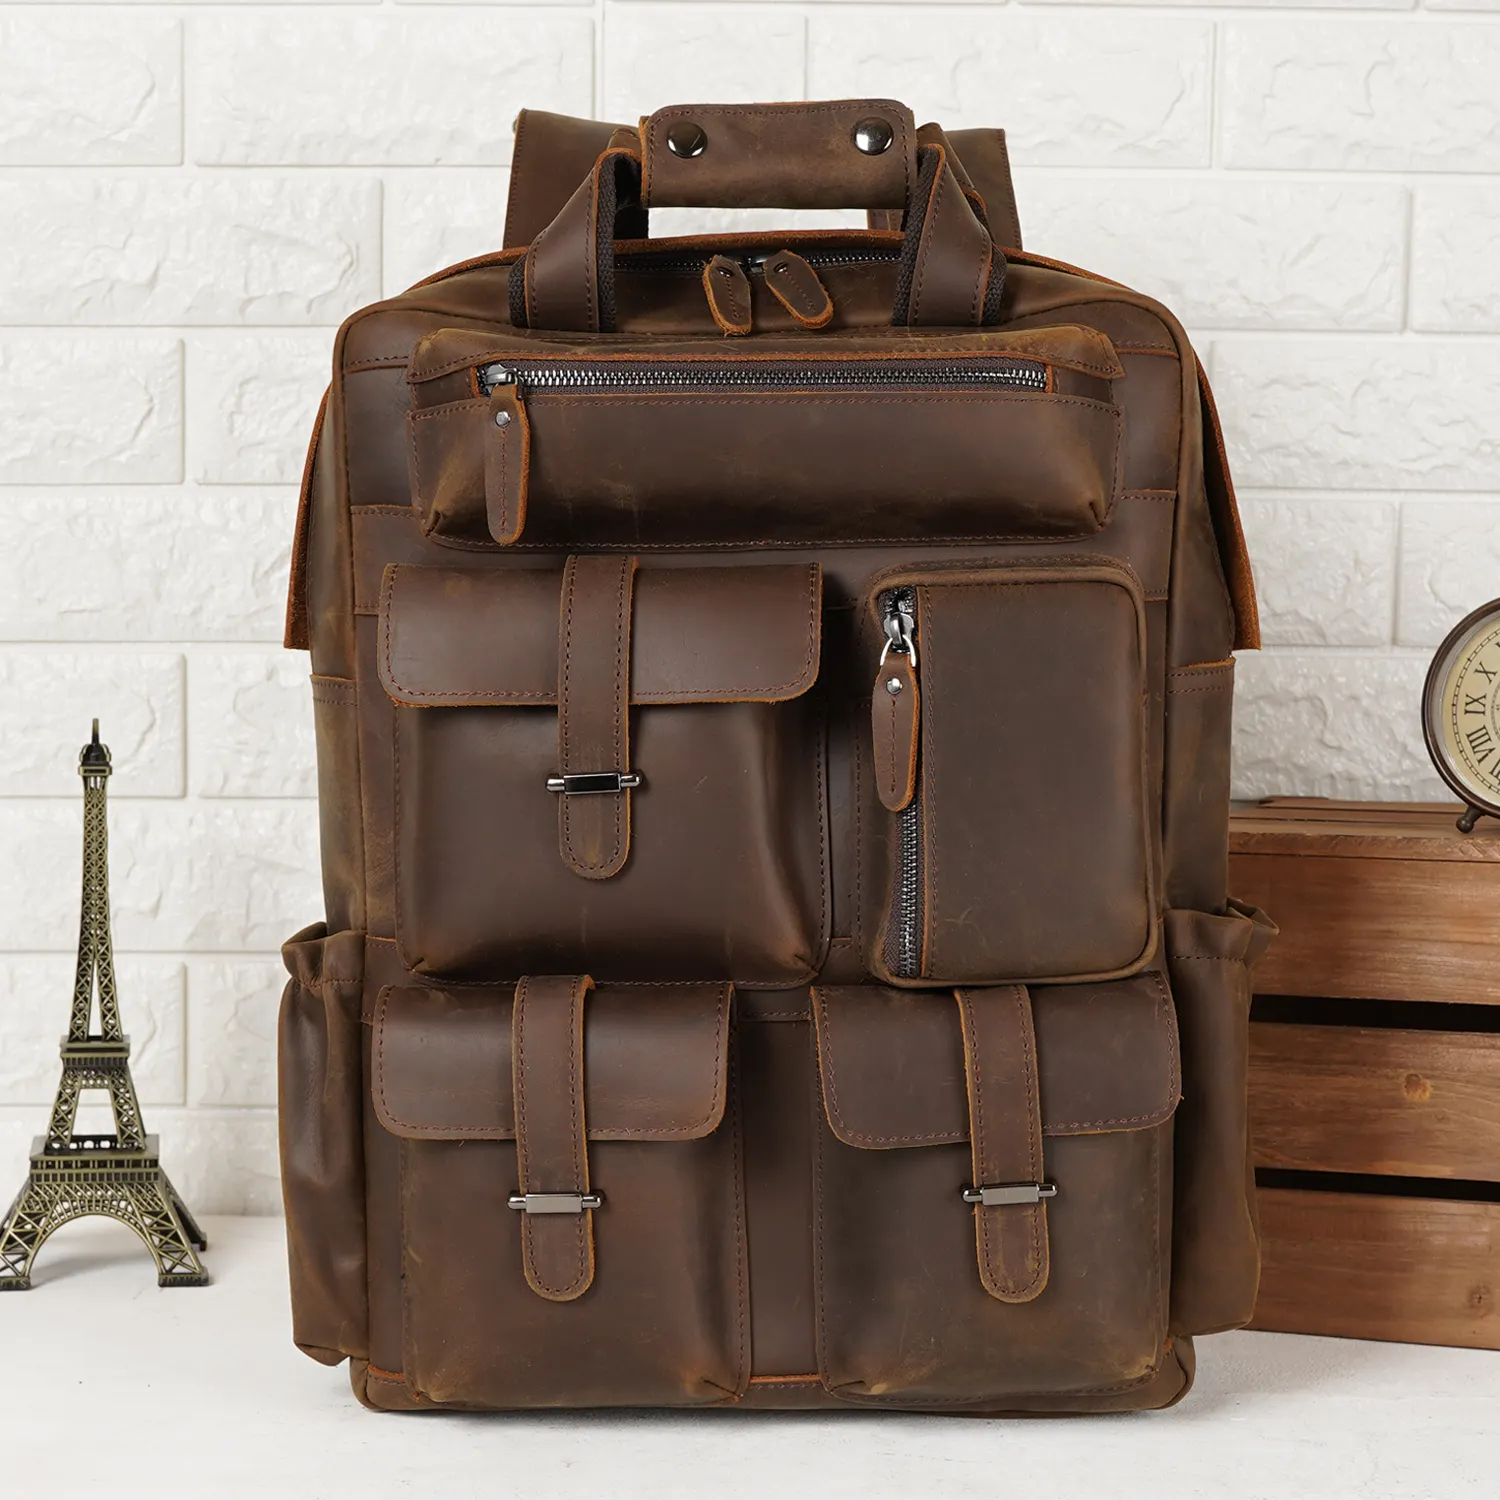 Large Capacity Vintage Leather Bag 15.6 Inch Laptop Backpack Leather Men's Traveling Backpack Bag